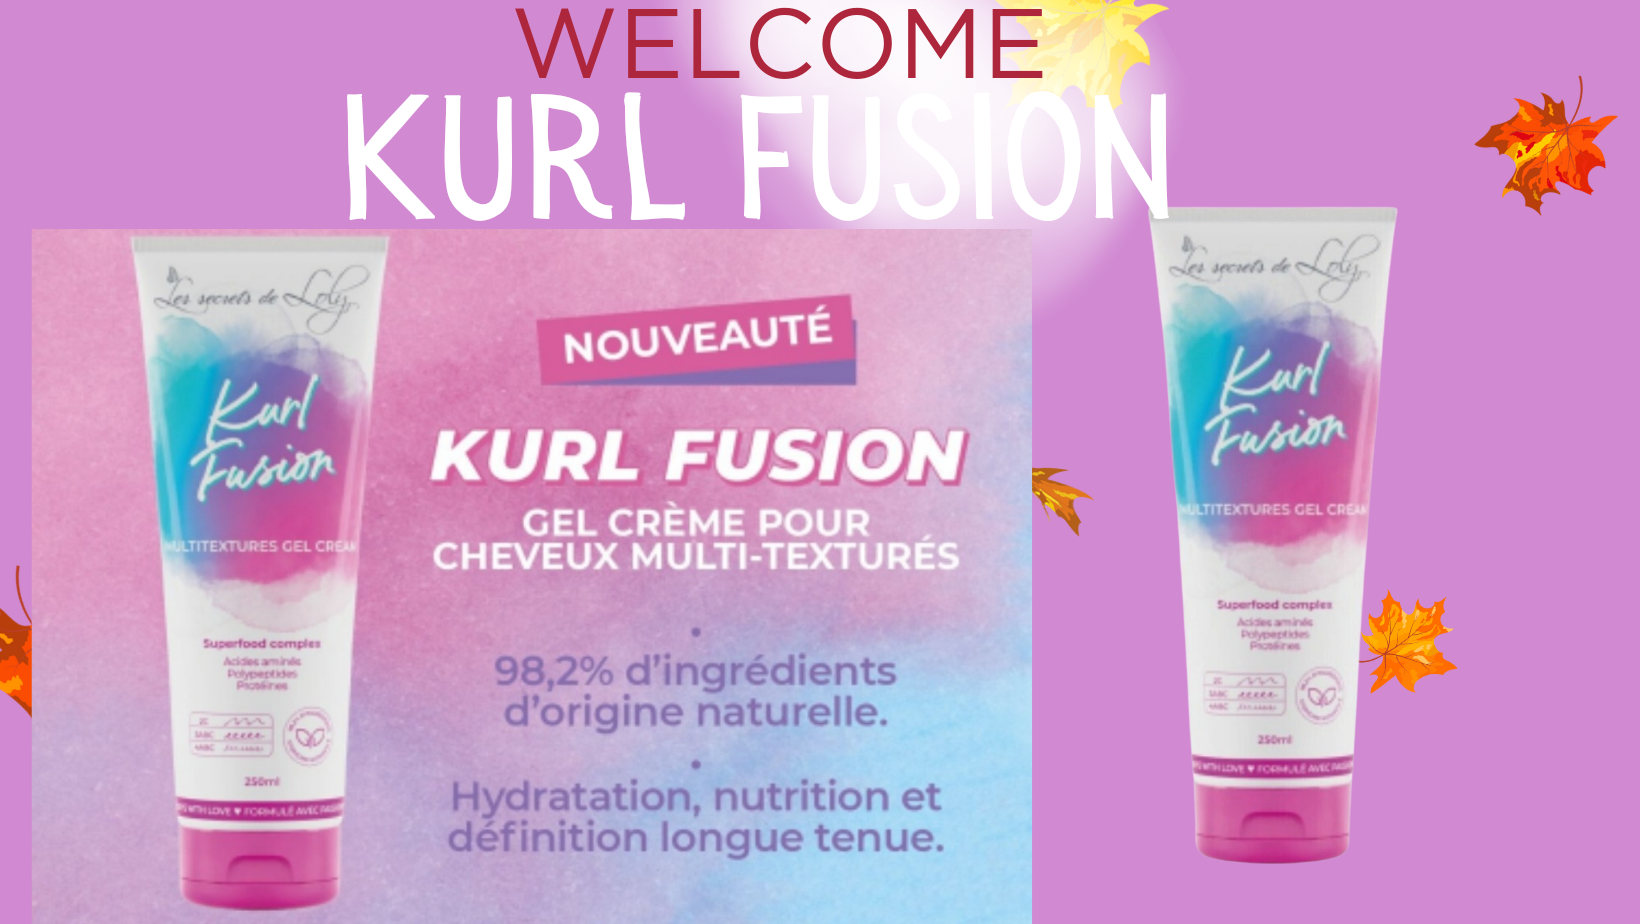 Kurl Fusion - Les Secrets de Loly